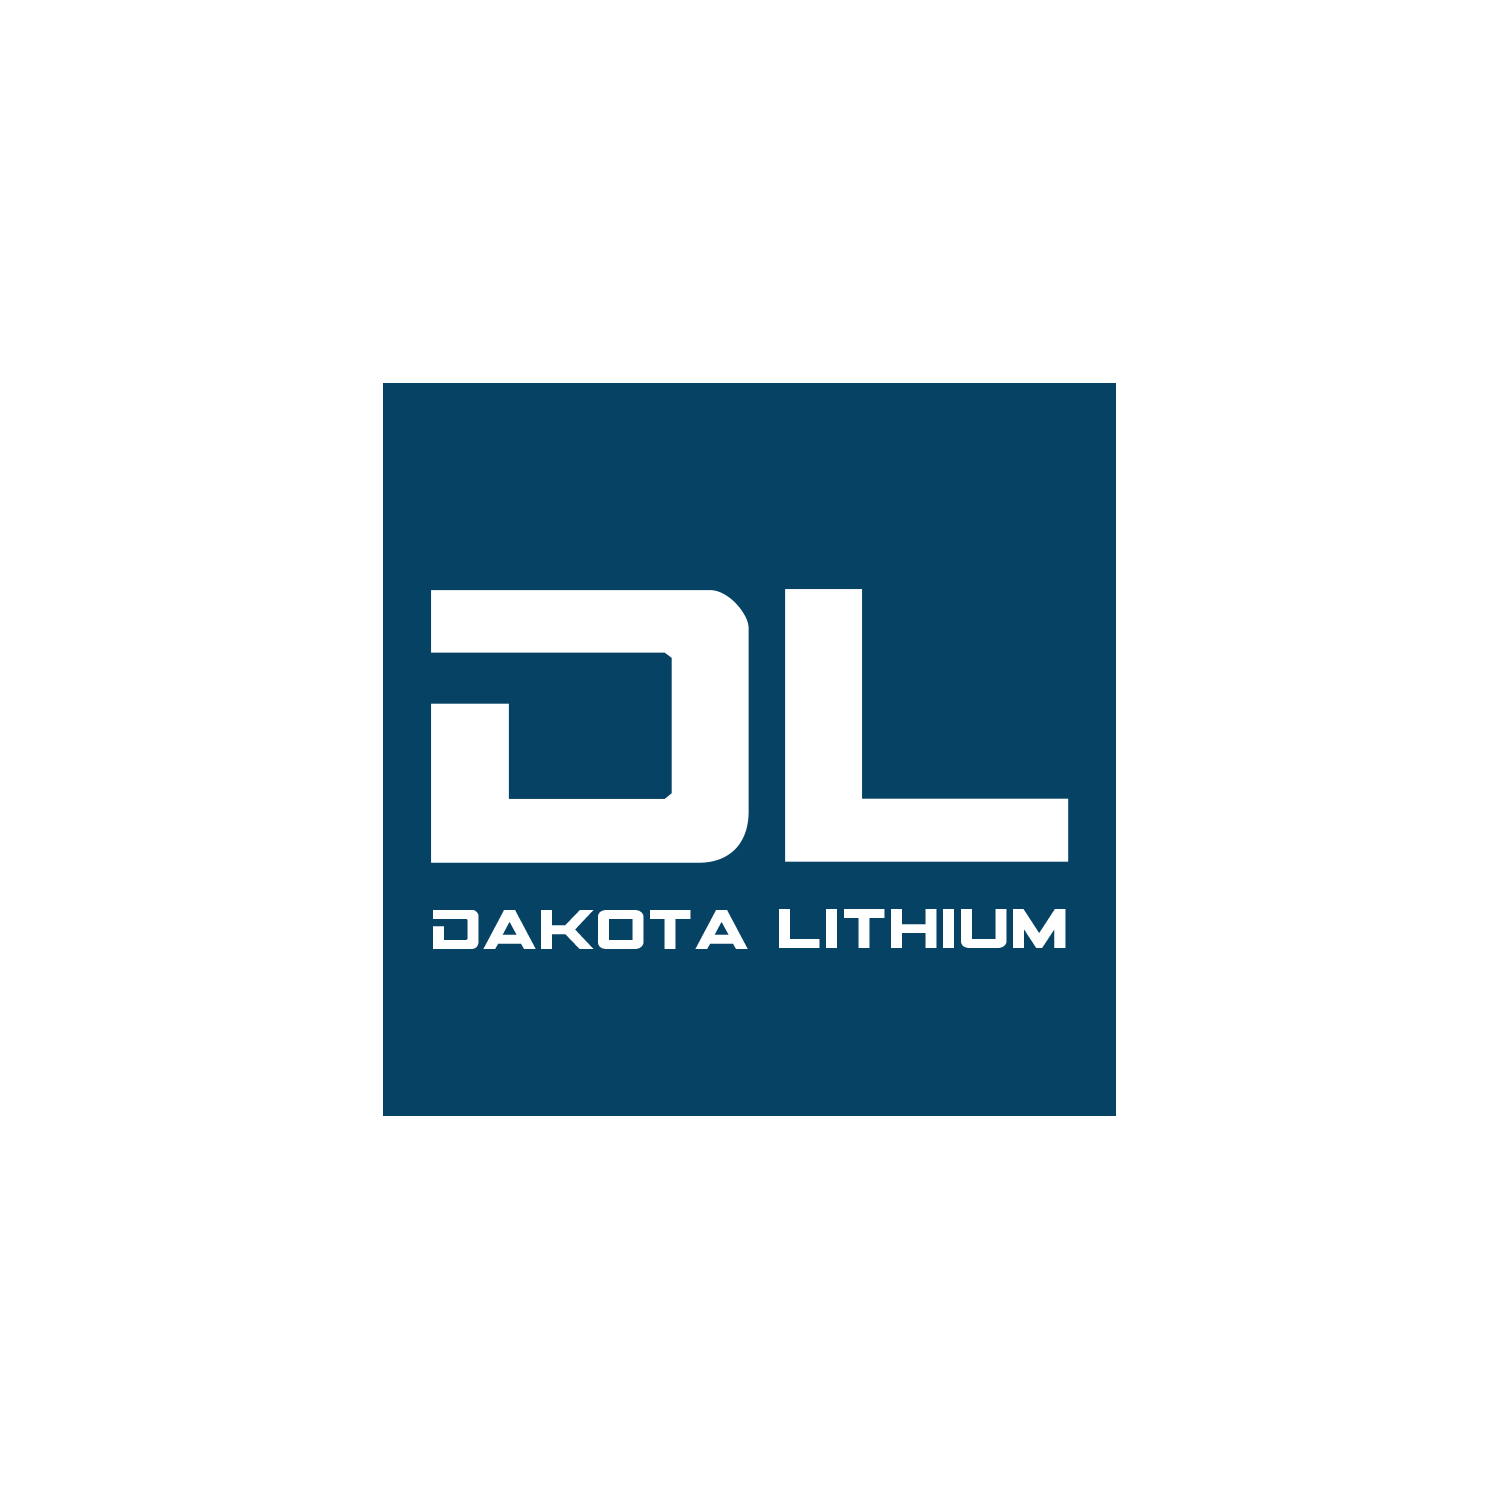 Dakota Lithium (Copy)